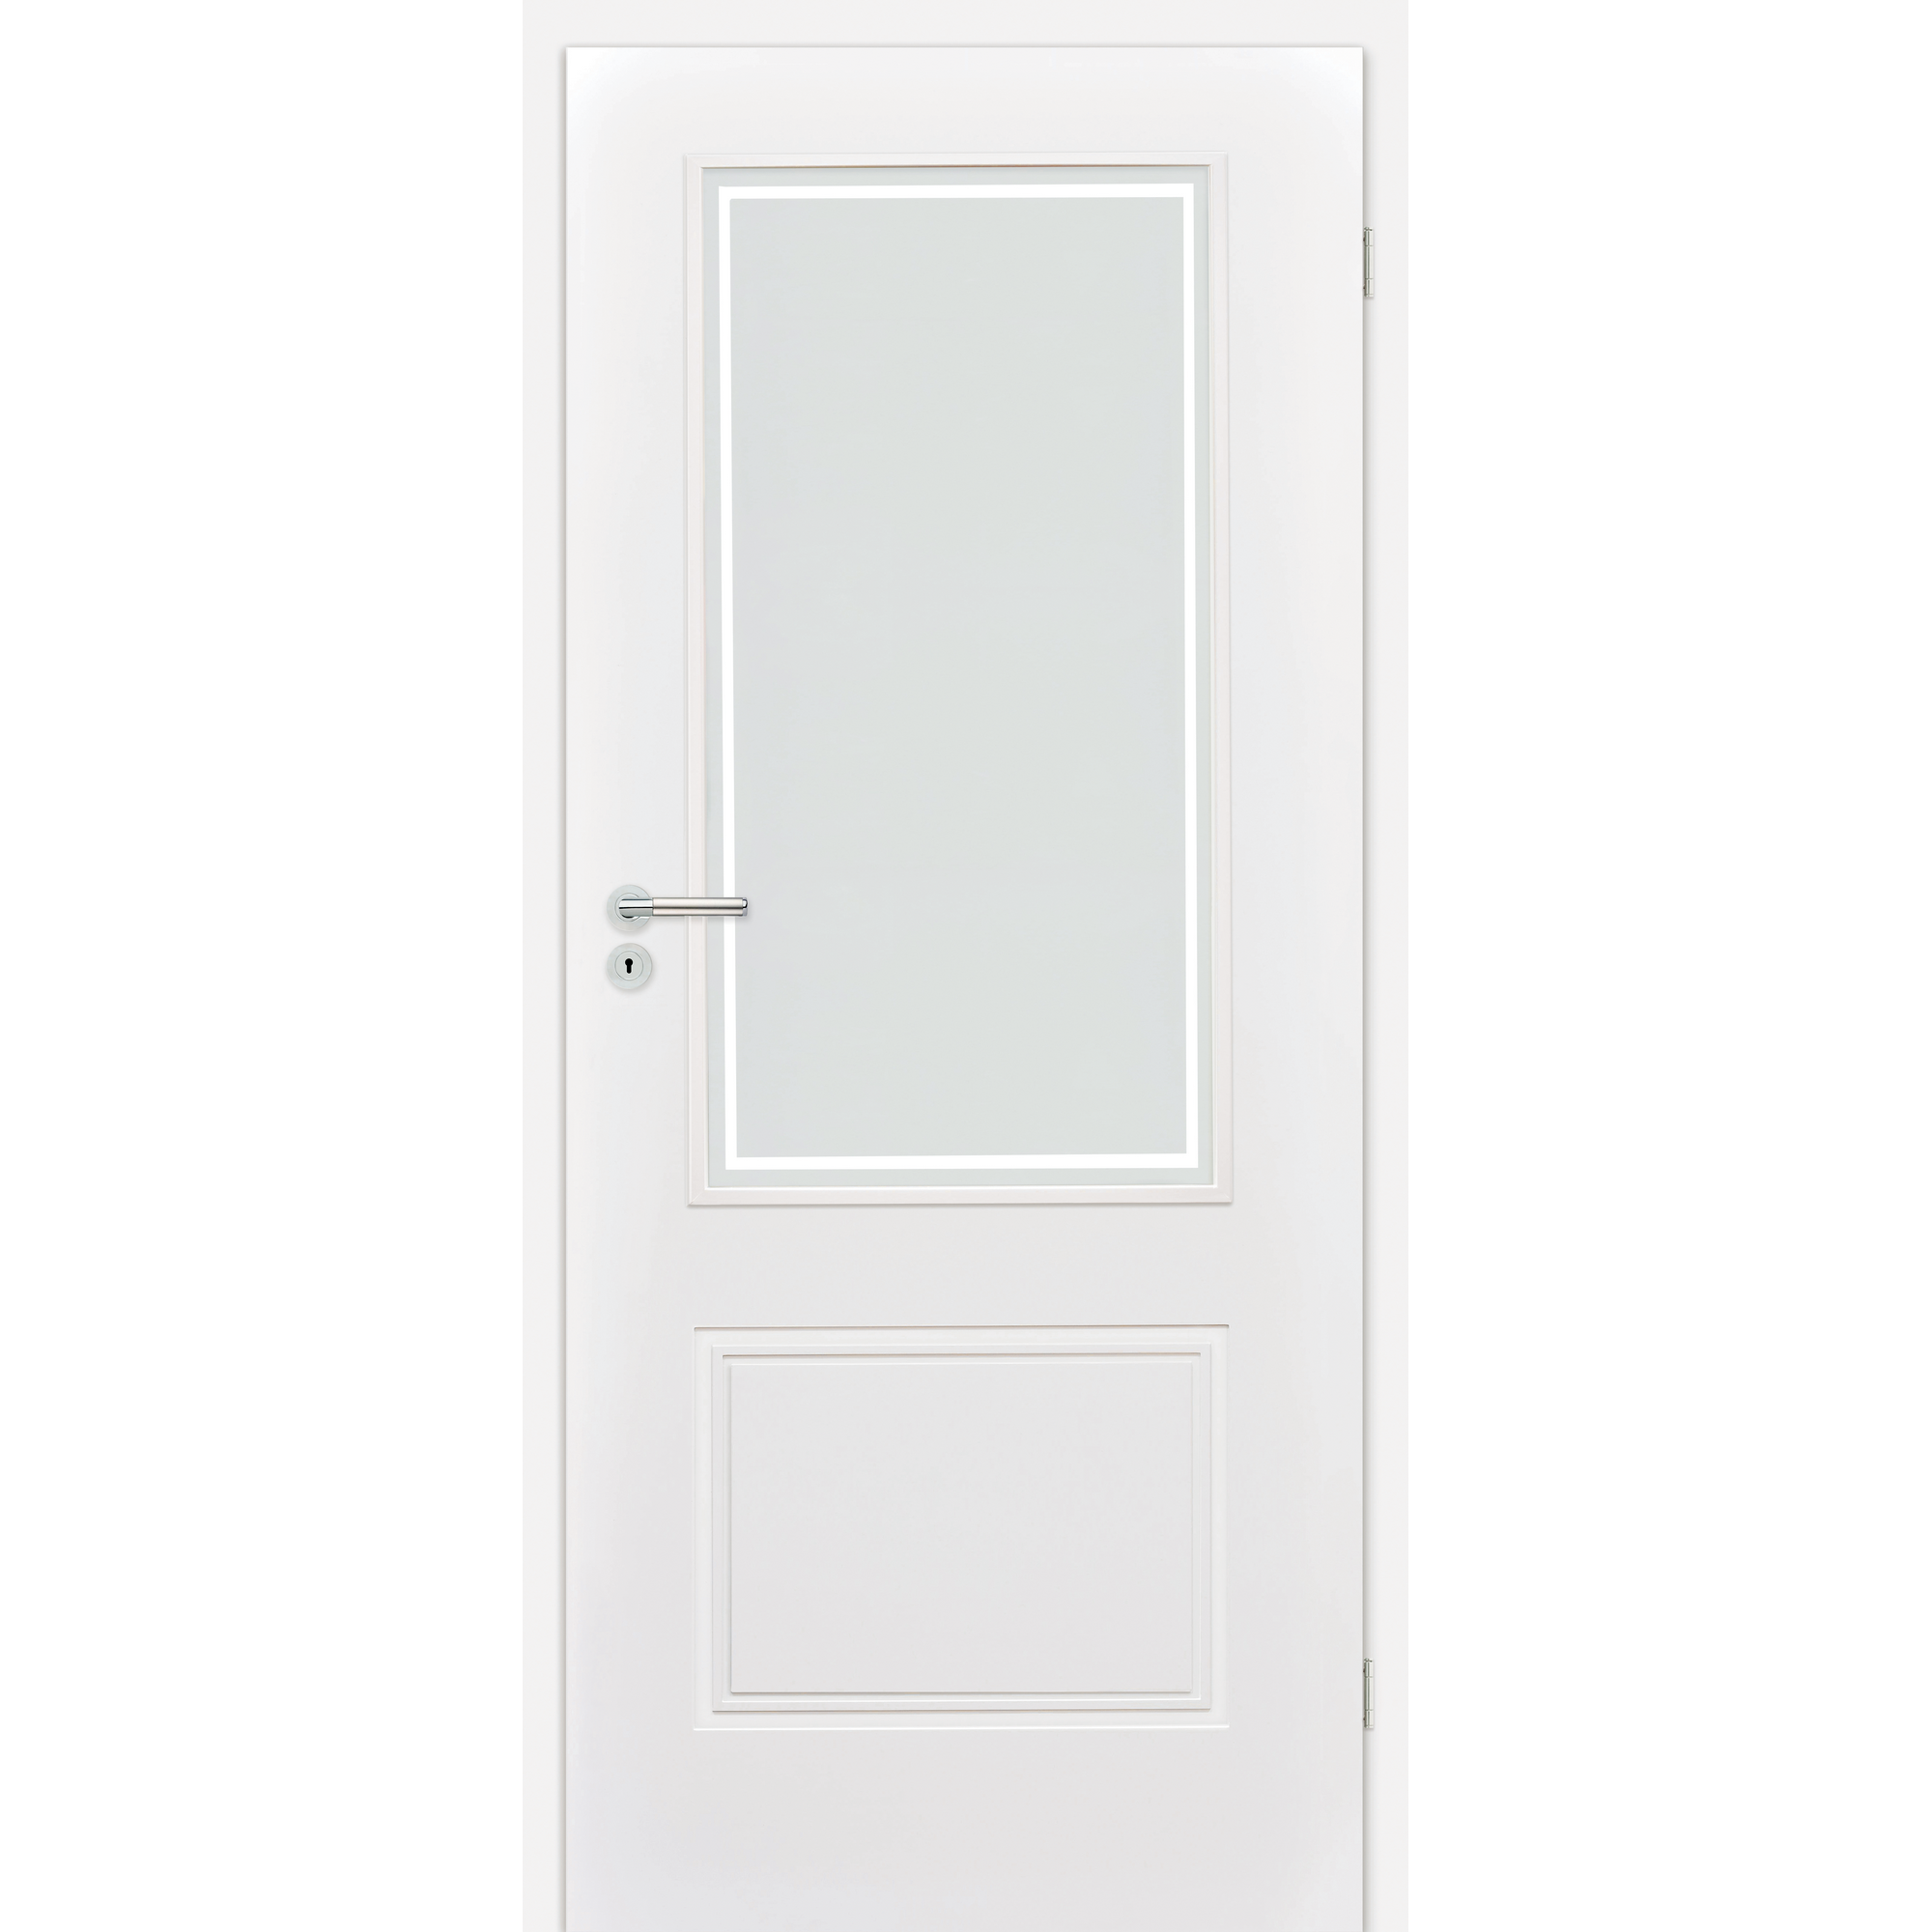 Innentür 'Linea 1.3 RS' mit Lichtausschnitt weiß 198,5 x 73,5 cm, Rechtsanschlag + product picture